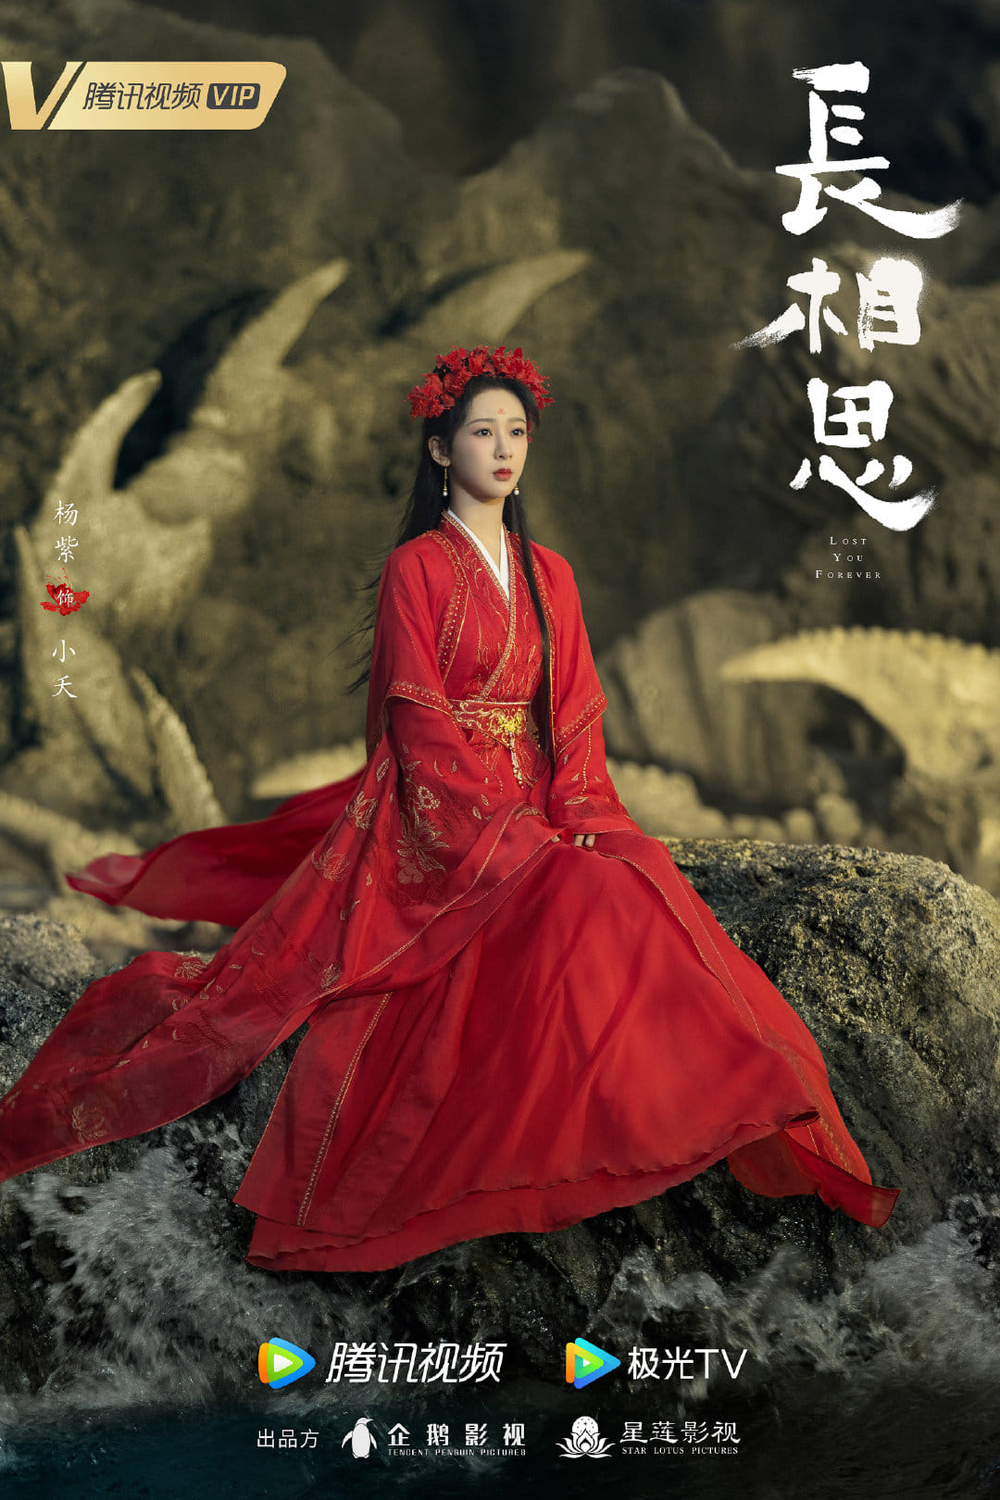 Con gái diva Hồng Nhung mặc váy đỏ cực xinh